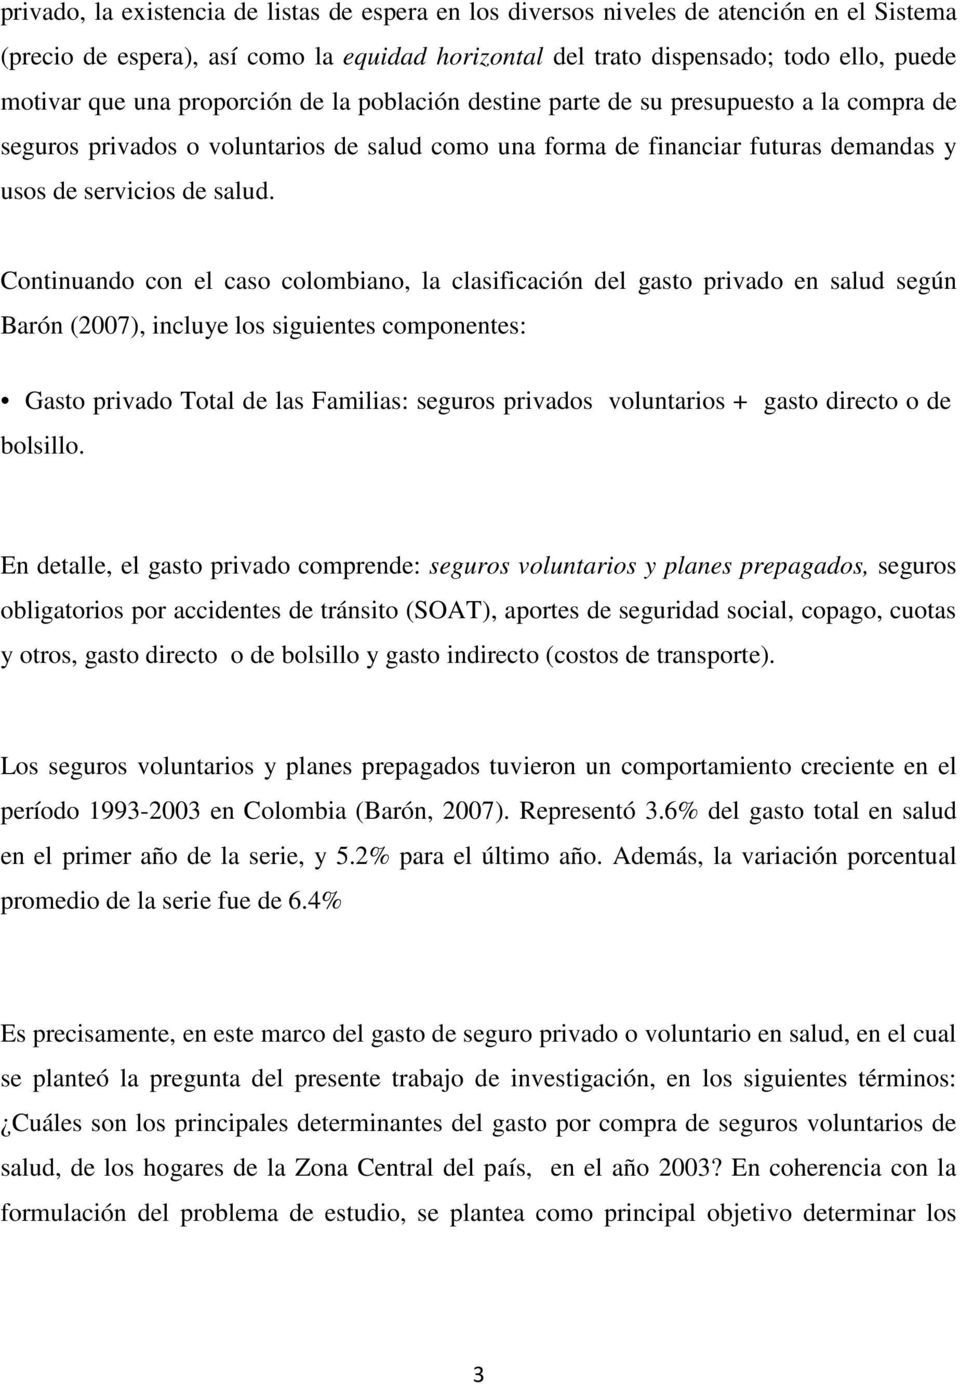 Continuando con el caso colombiano, la clasificación del gasto privado en salud según Barón (2007), incluye los siguientes componentes: Gasto privado Total de las Familias: seguros privados